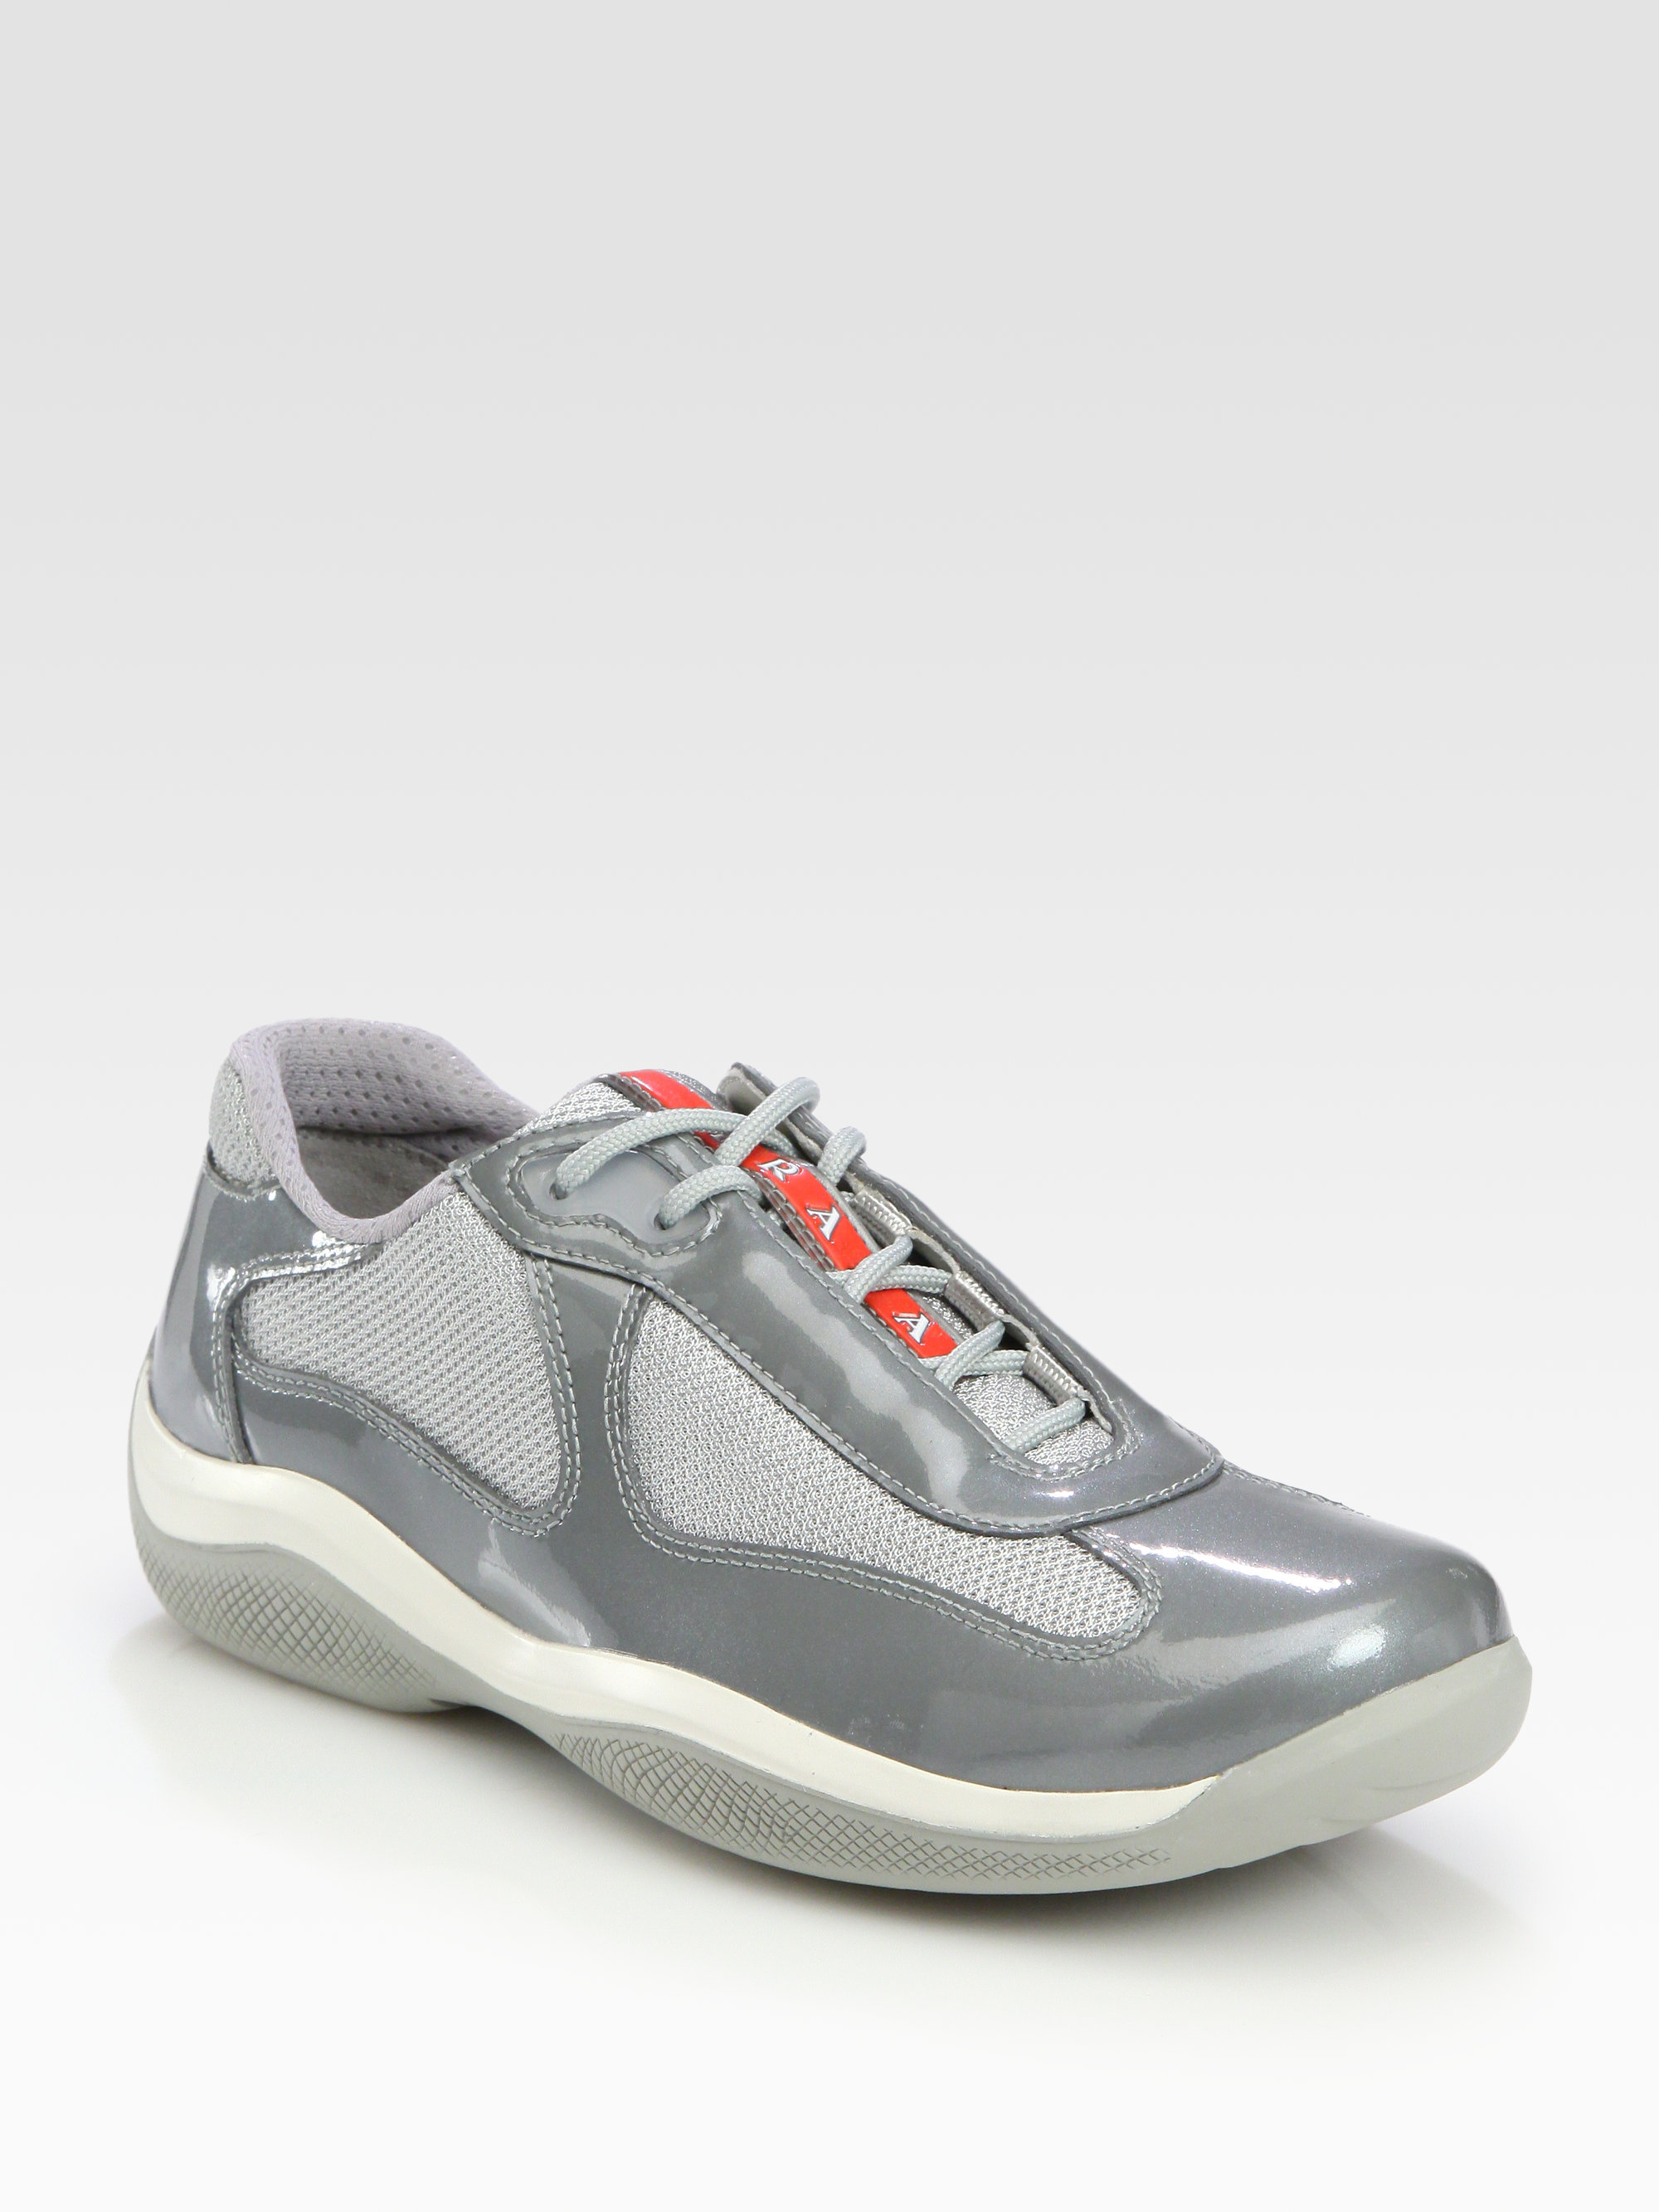 Lyst - Prada Patent Sport Sneakers in Metallic